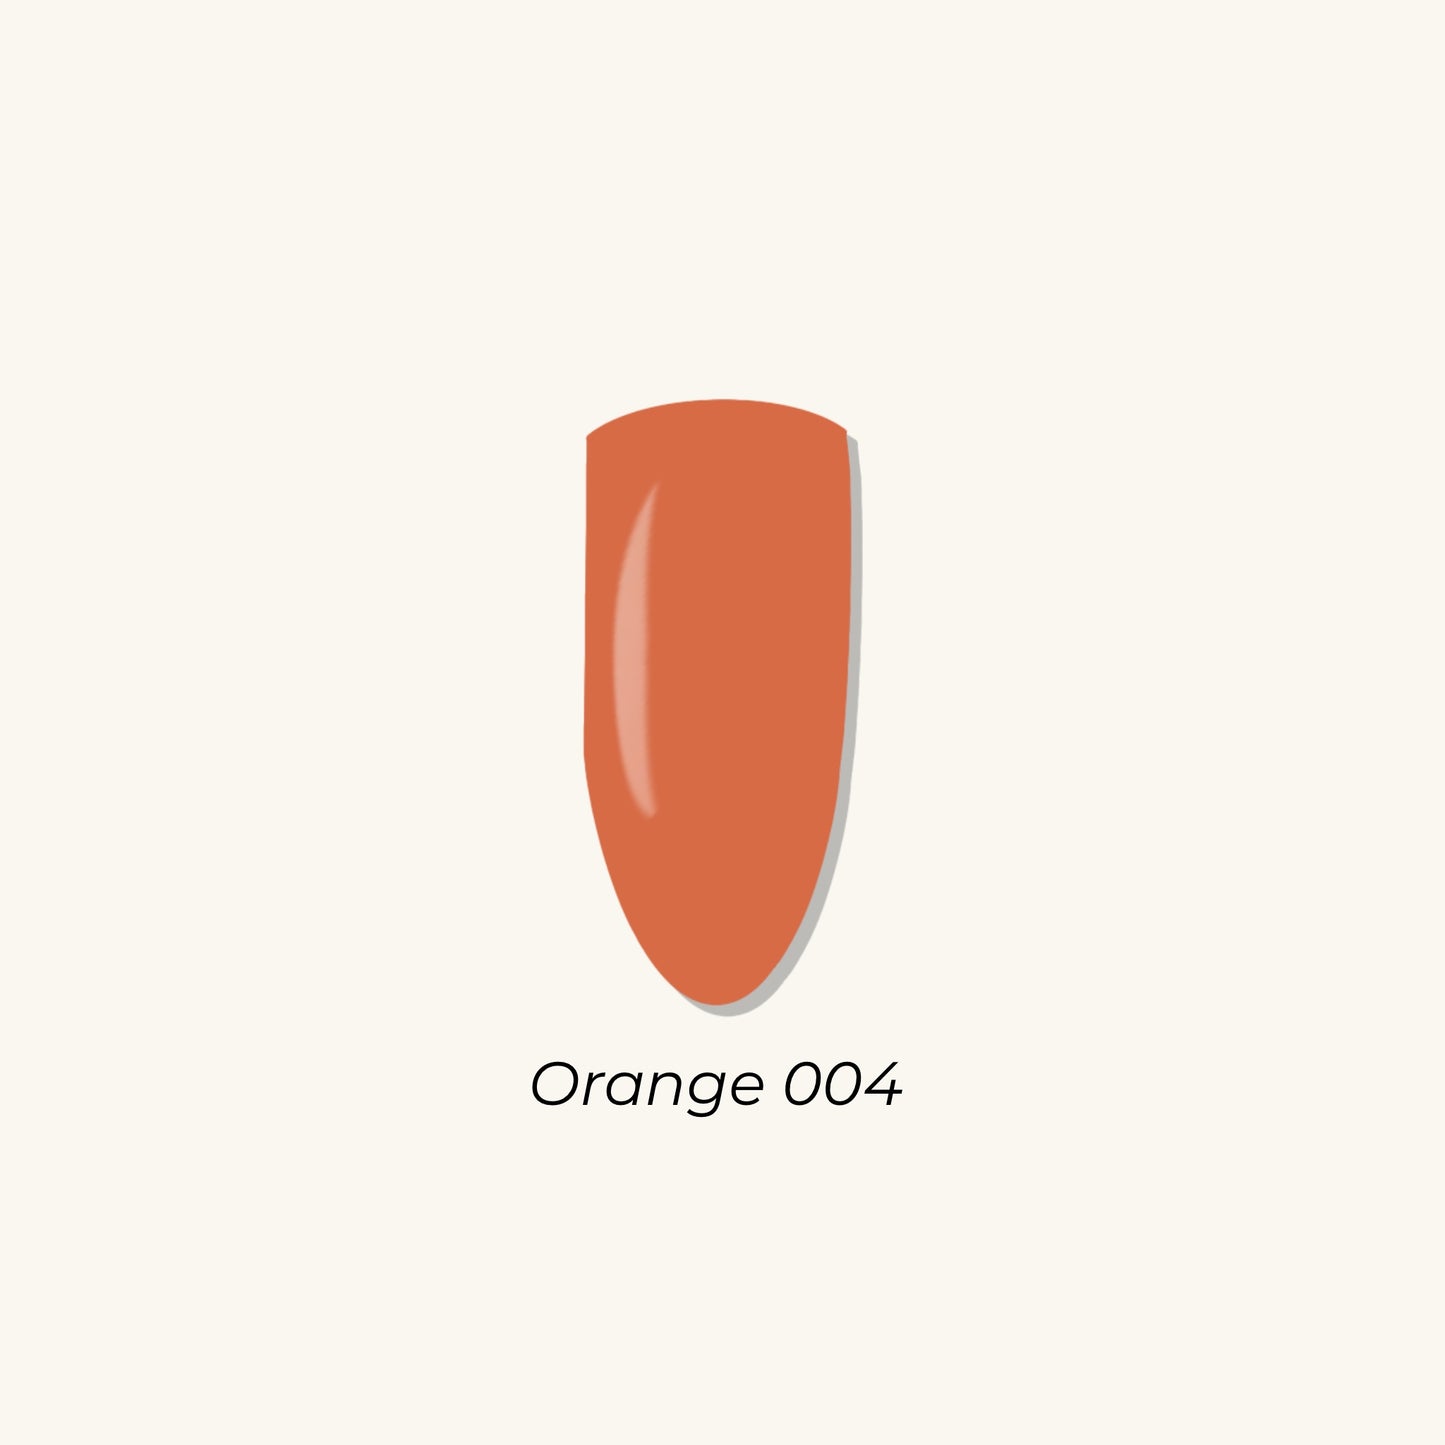 Orange 004